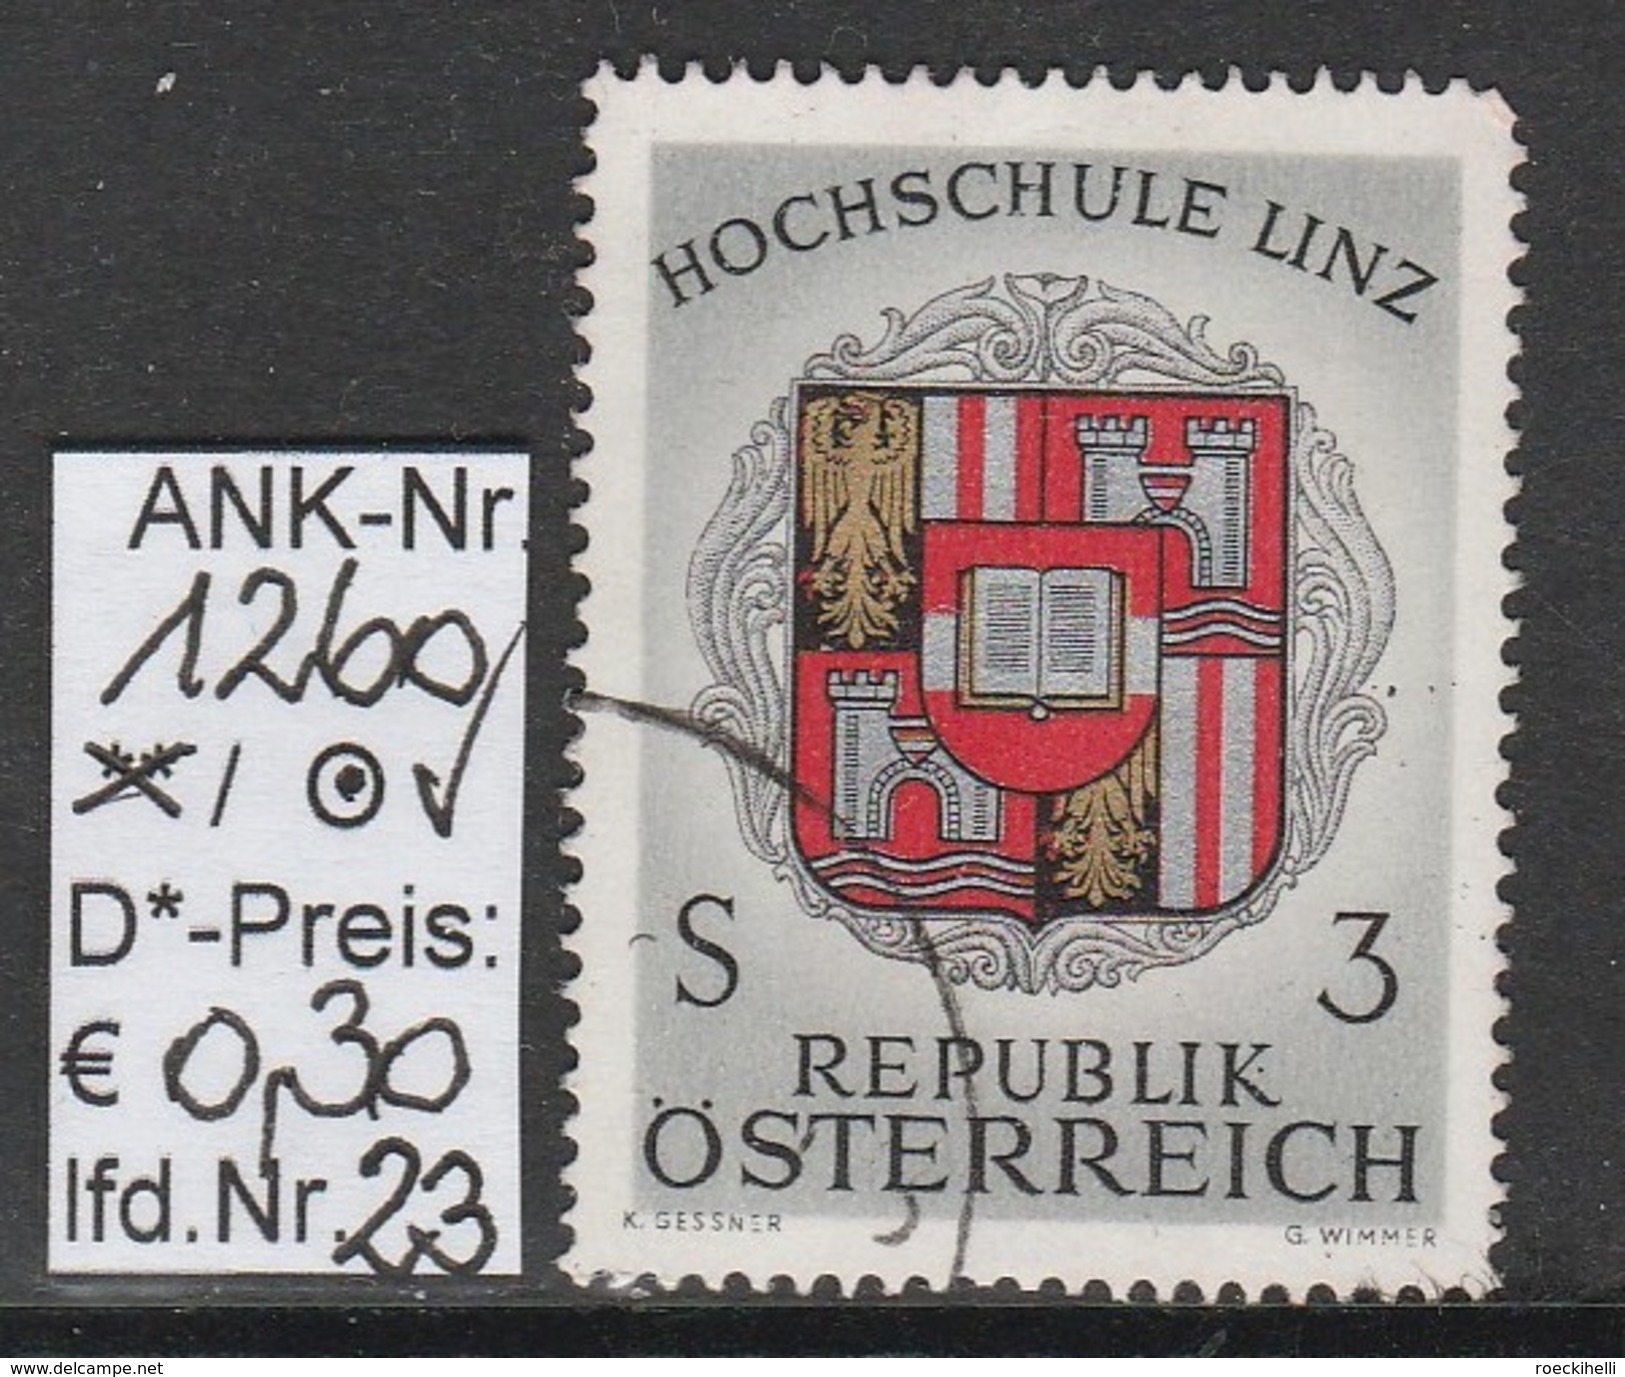 9.12.1966 - SM  "Hochschule Linz" - o gestempelt  -  siehe Scan  (1260o 01-23)